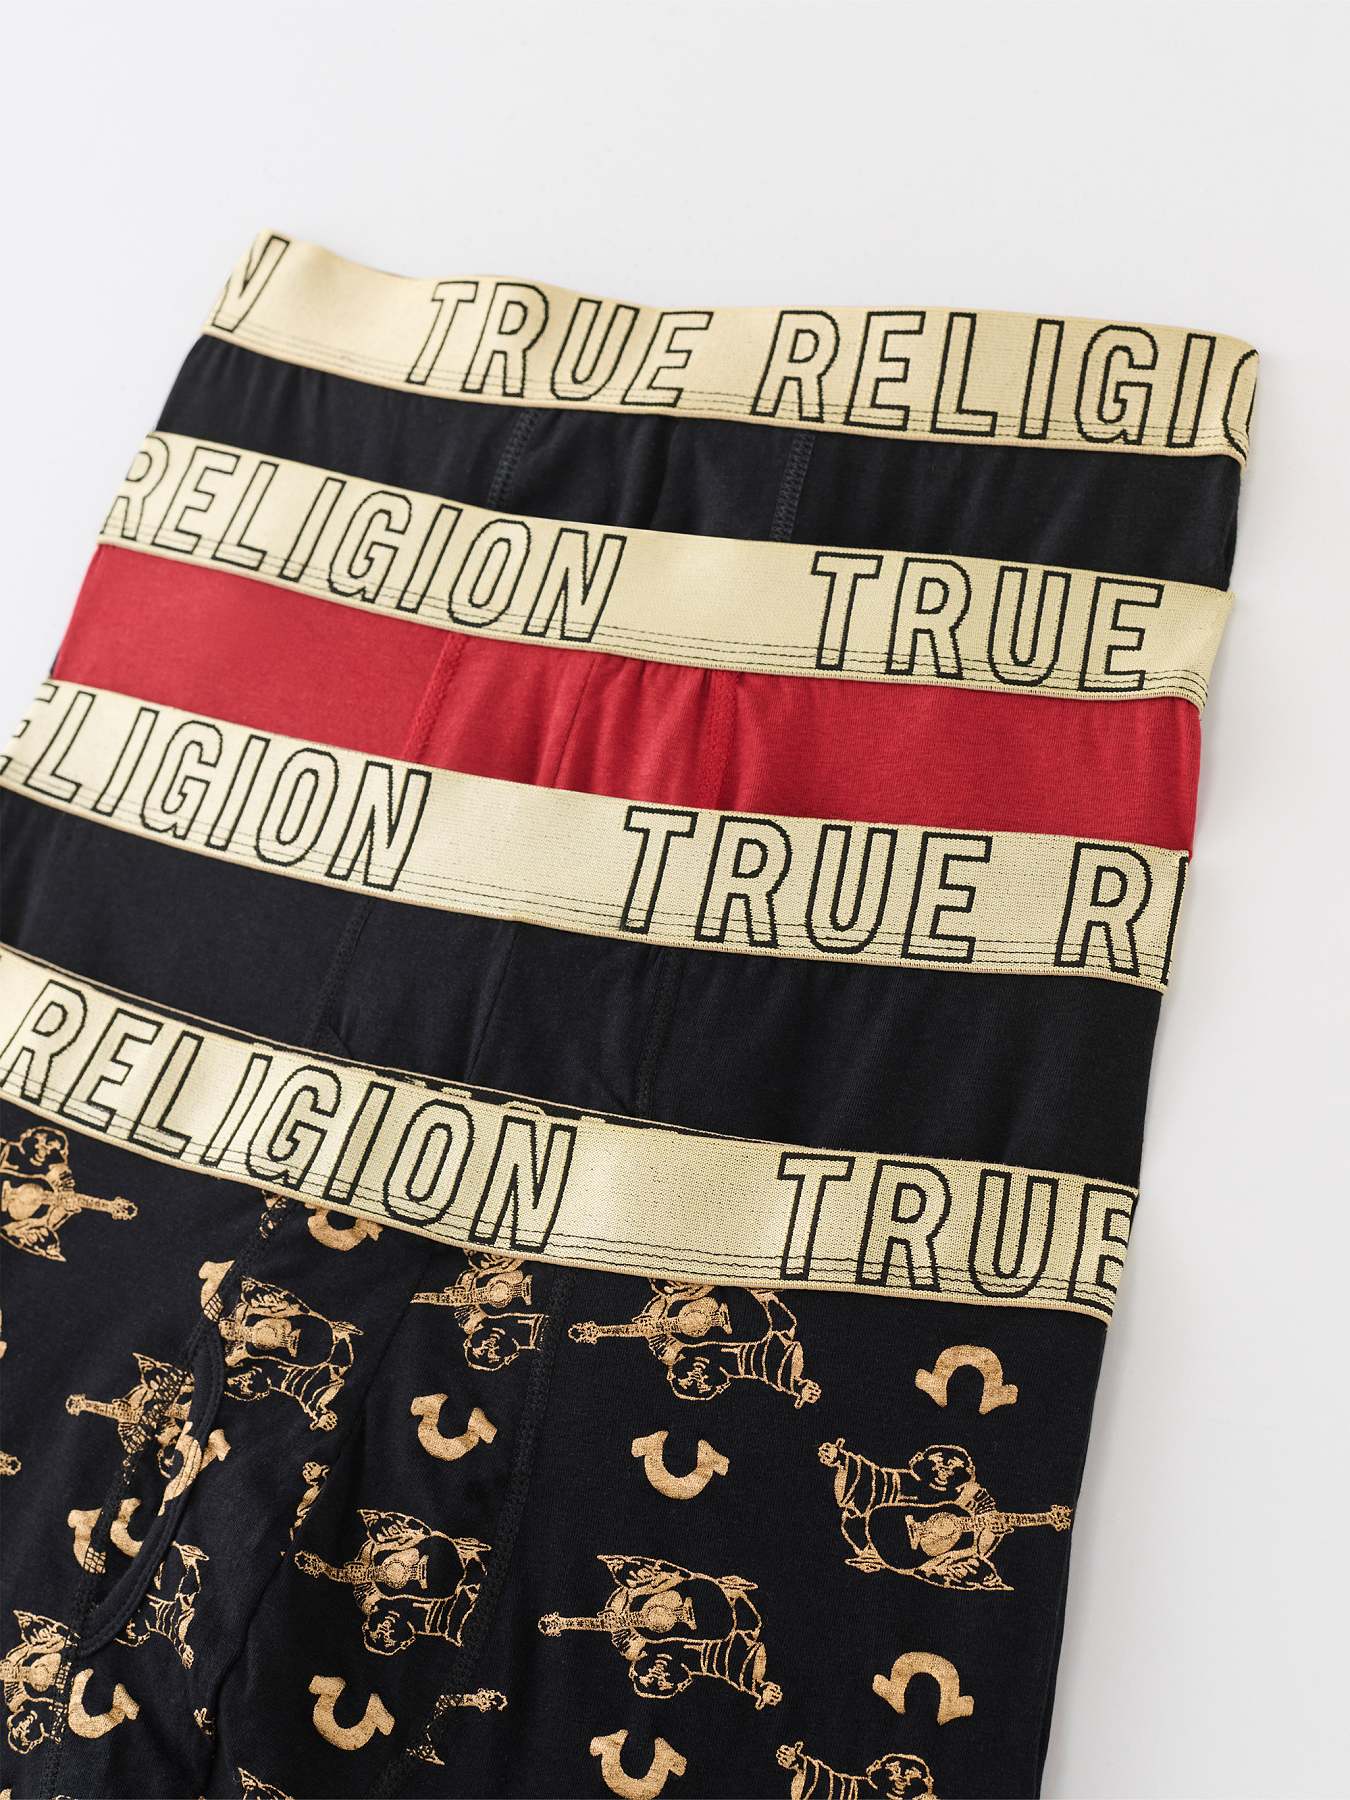 Buy True Religion Mens Boxer Briefs Cotton Stretch Underwear for